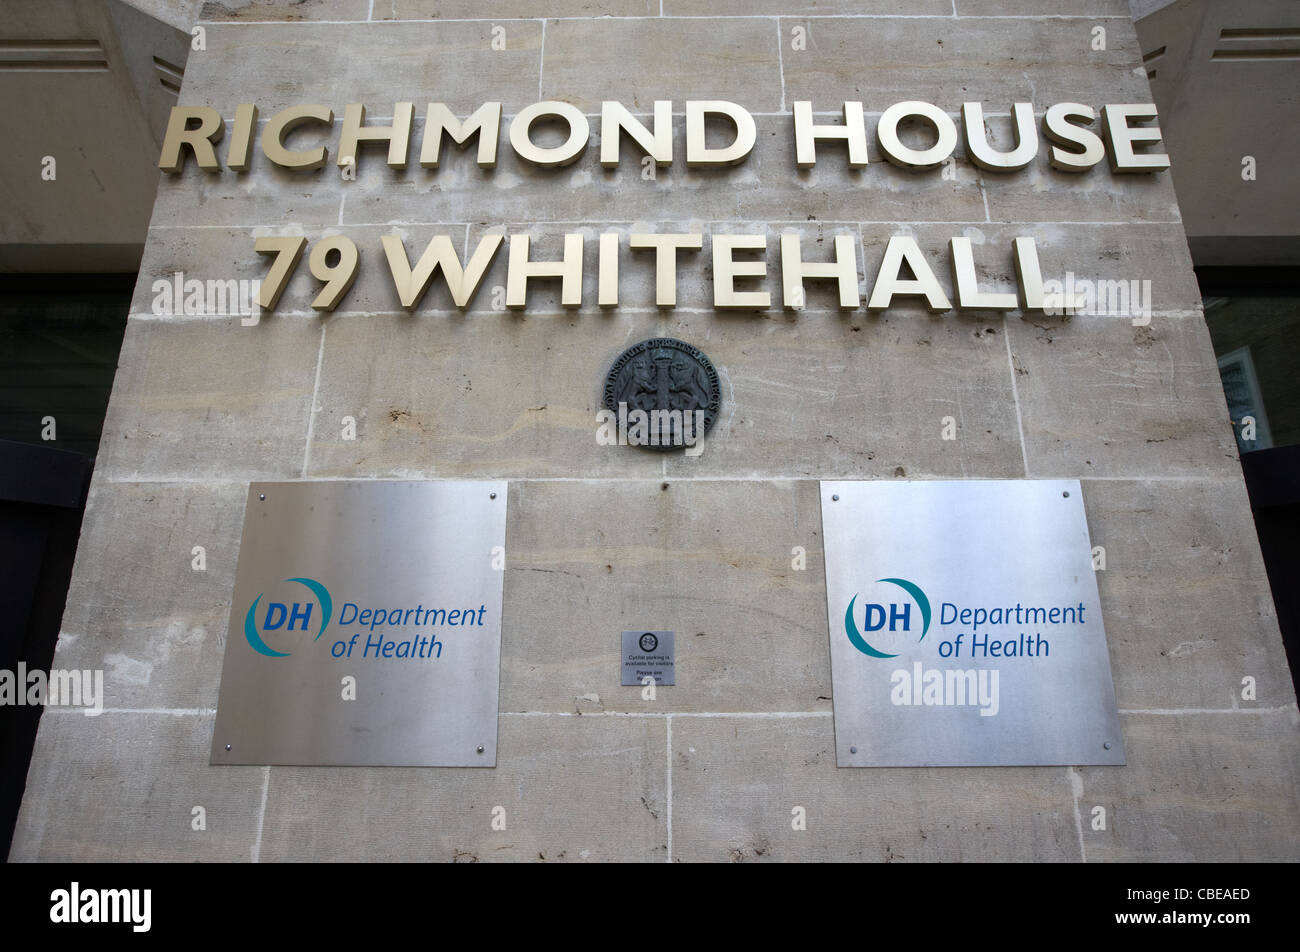 Richmond House Ministère de la santé gouvernement britannique bâtiment officiel whitehall Londres Angleterre Royaume-Uni uk Banque D'Images